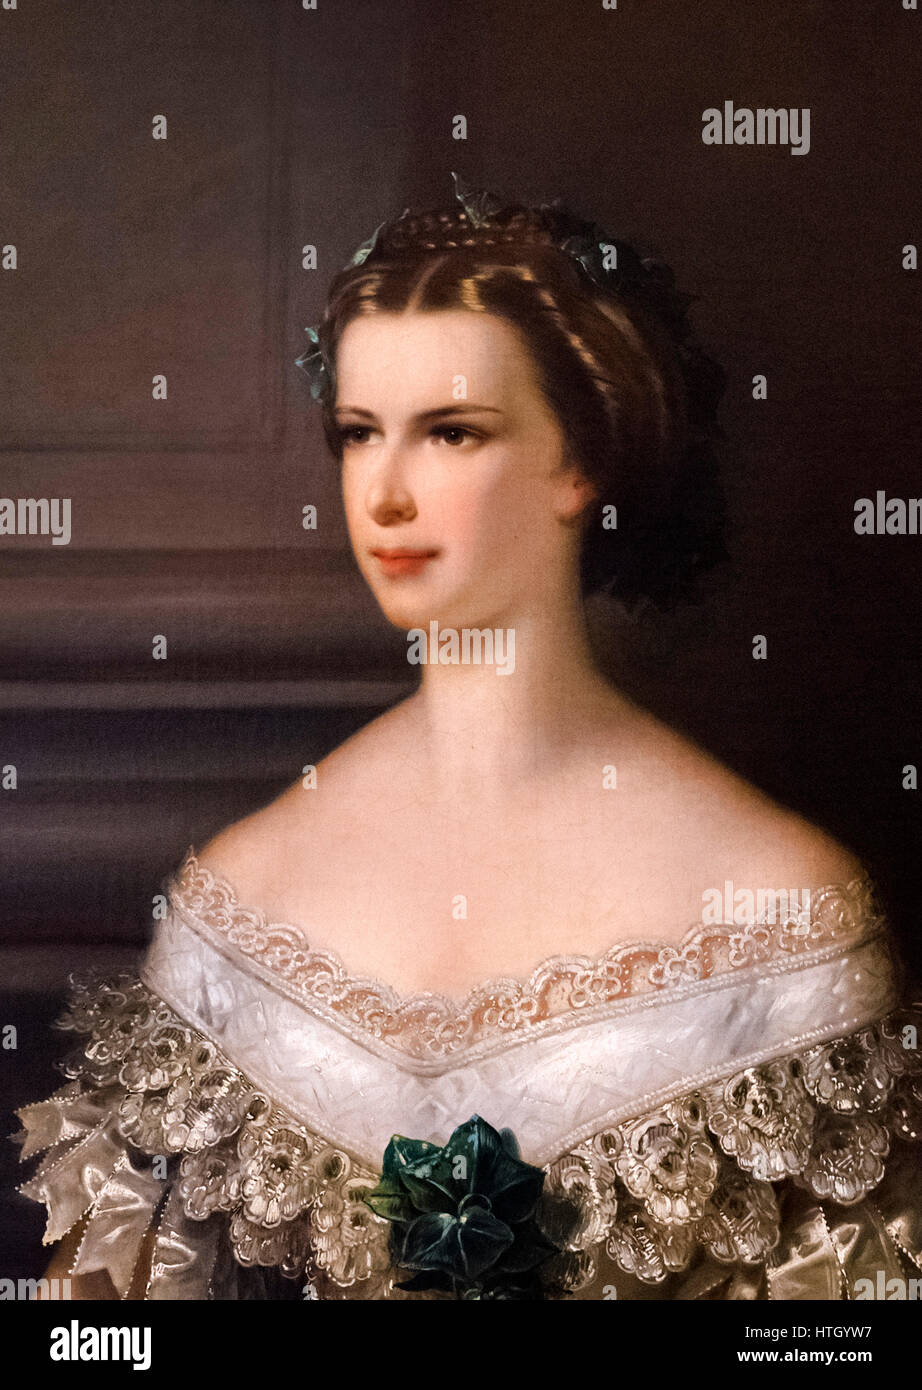 SISSI Y FRANCISCO JOSÉ Sisi-retrato-la-emperatriz-elisabeth-de-austria-1837-1898-conocido-como-sisi-esposa-del-emperador-franz-joseph-i-por-franz-schrotzberg-pintura-oleo-sobre-lienzo-1856-detalle-de-una-pintura-de-mayor-tamano-htgyw6-htgyw7